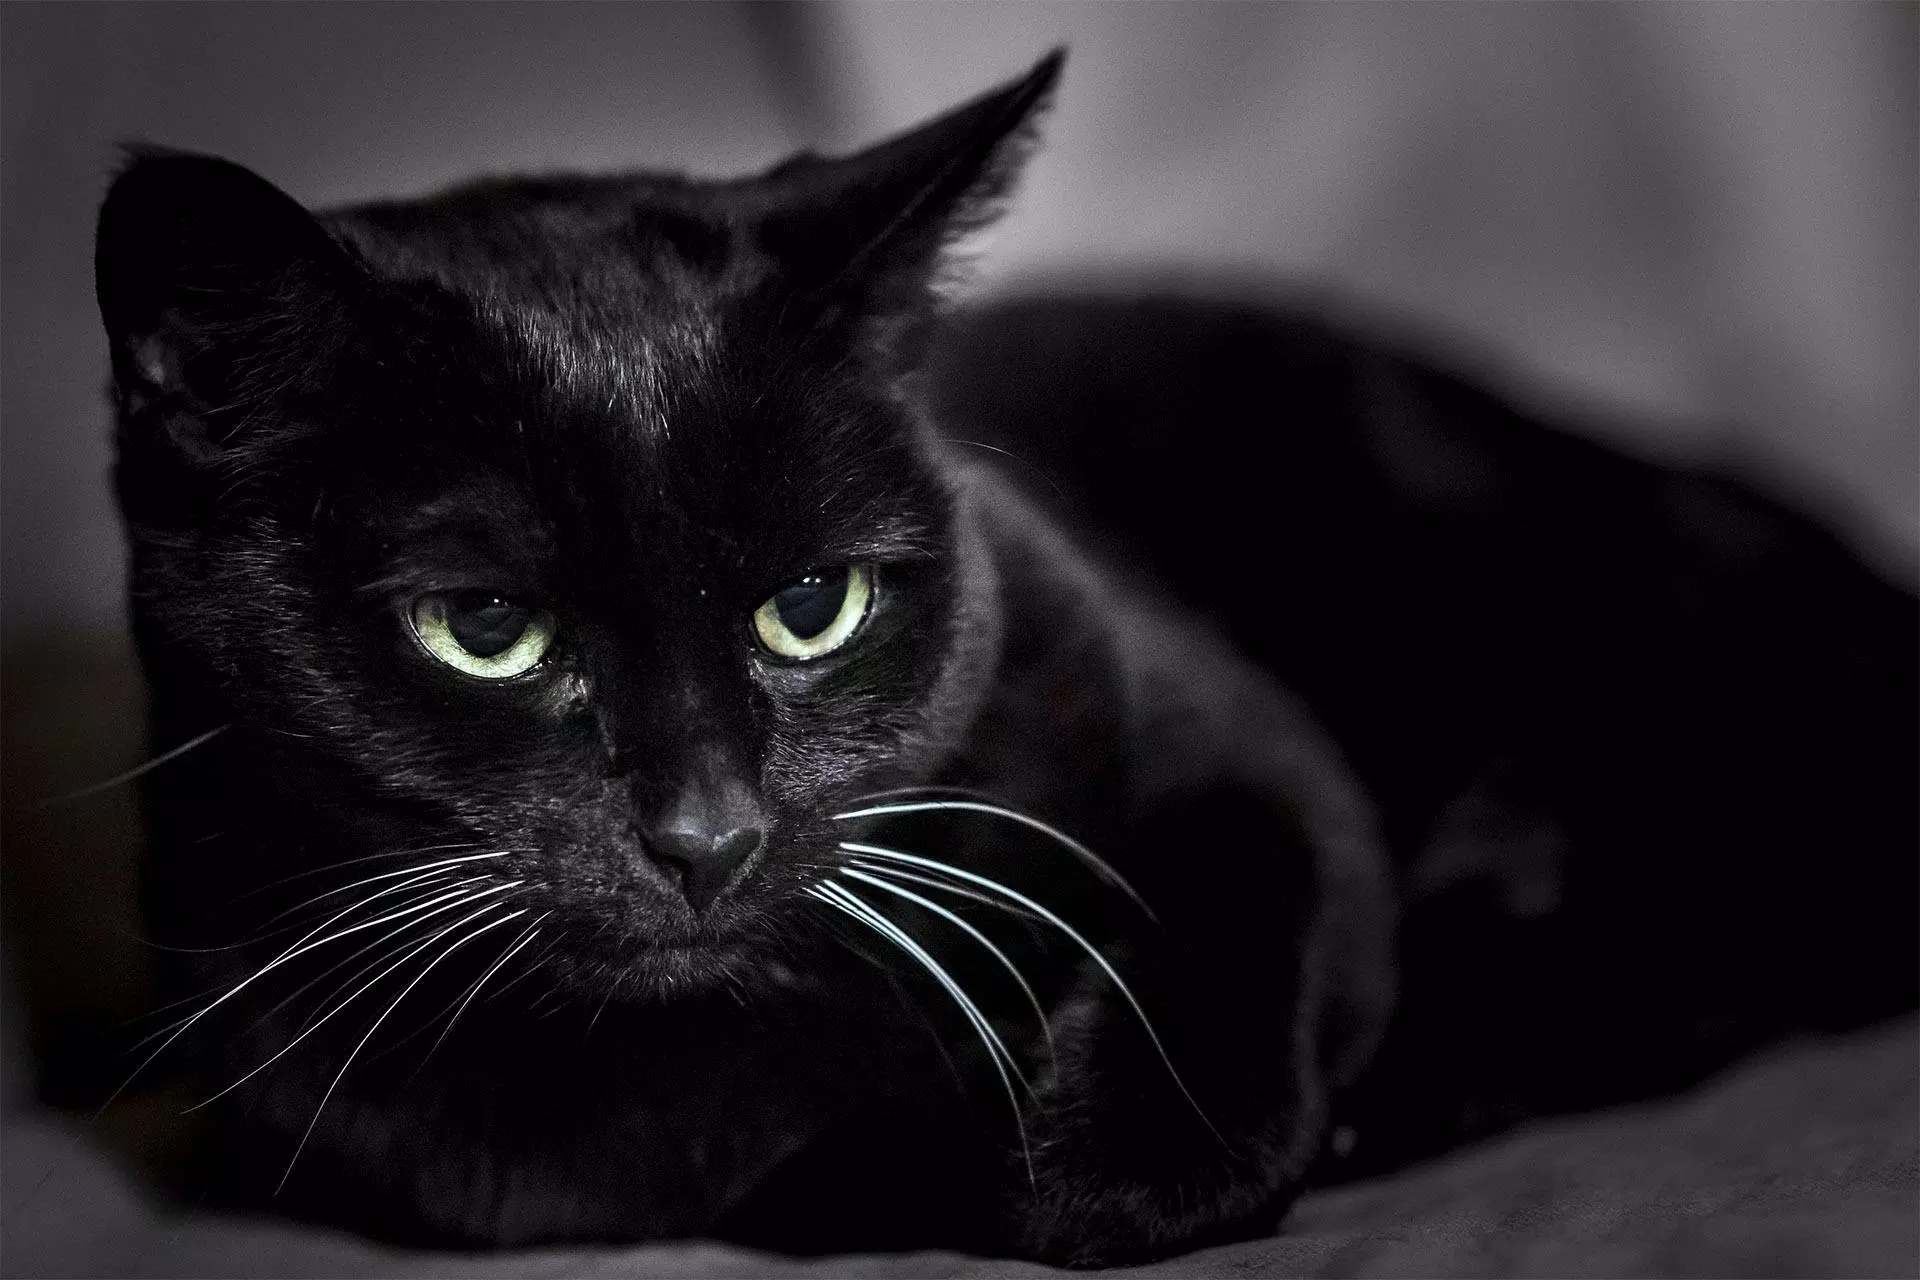 Tải ngay APK Black Cat Wallpaper Full HD để cùng thưởng thức những hình nền mèo đen đáng yêu và phong cách. Với chất lượng đỉnh cao, hình ảnh sống động, sẽ không làm bạn thất vọng.